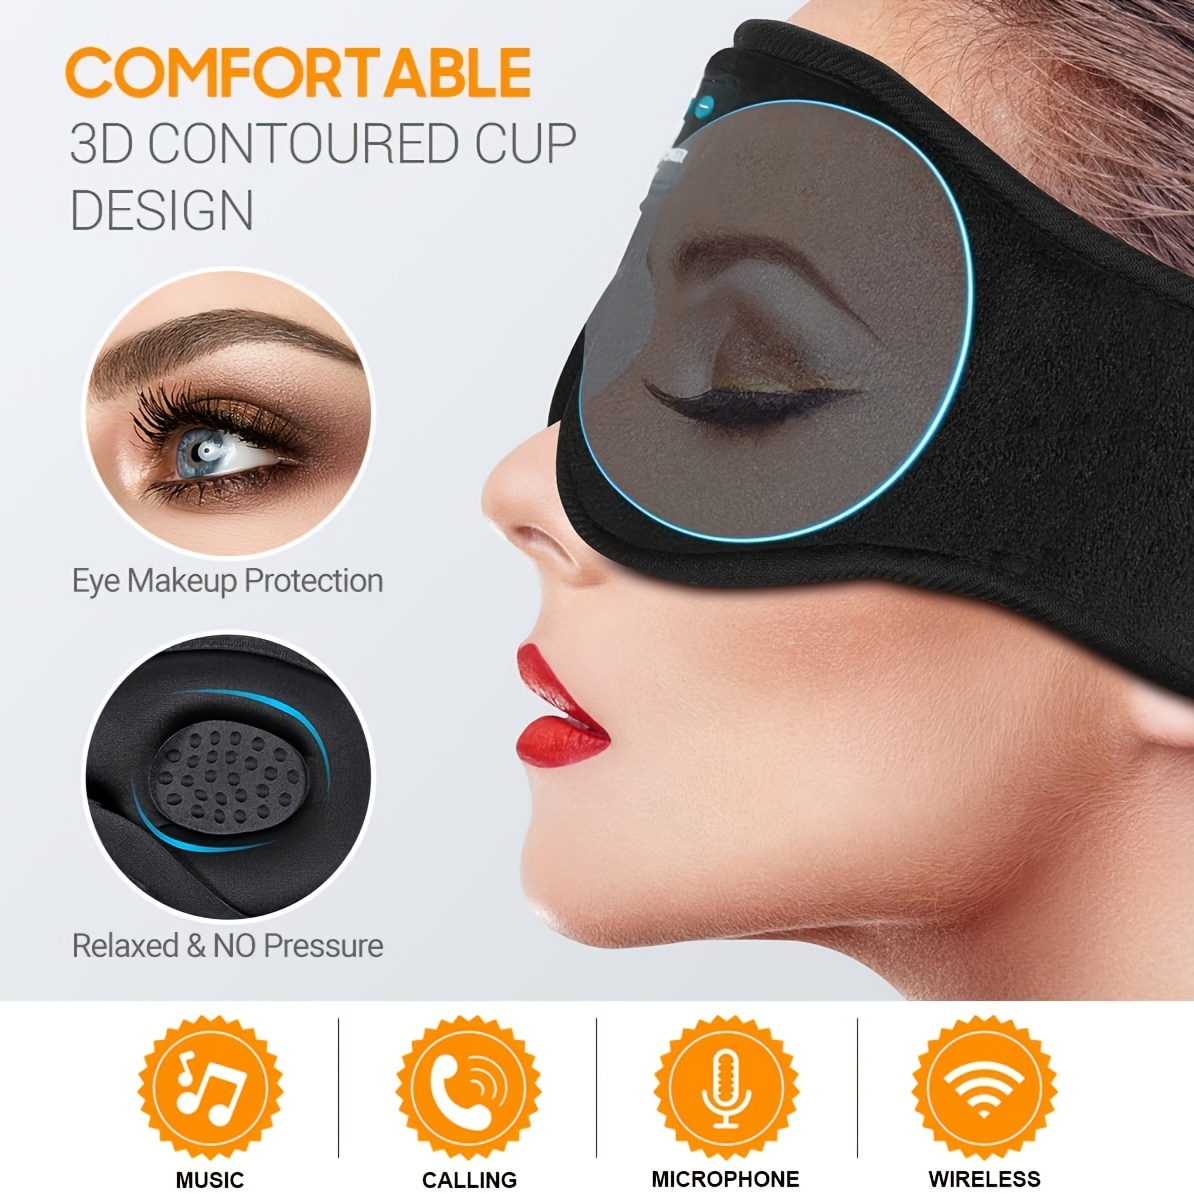 LitBear Sleep Mask for Side Sleeper Women Men, Eye Mask for Sleeping Light  Blocking, 3D Contoured Cup Sleeping Mask, Soft Breathable Sleep Eye Mask